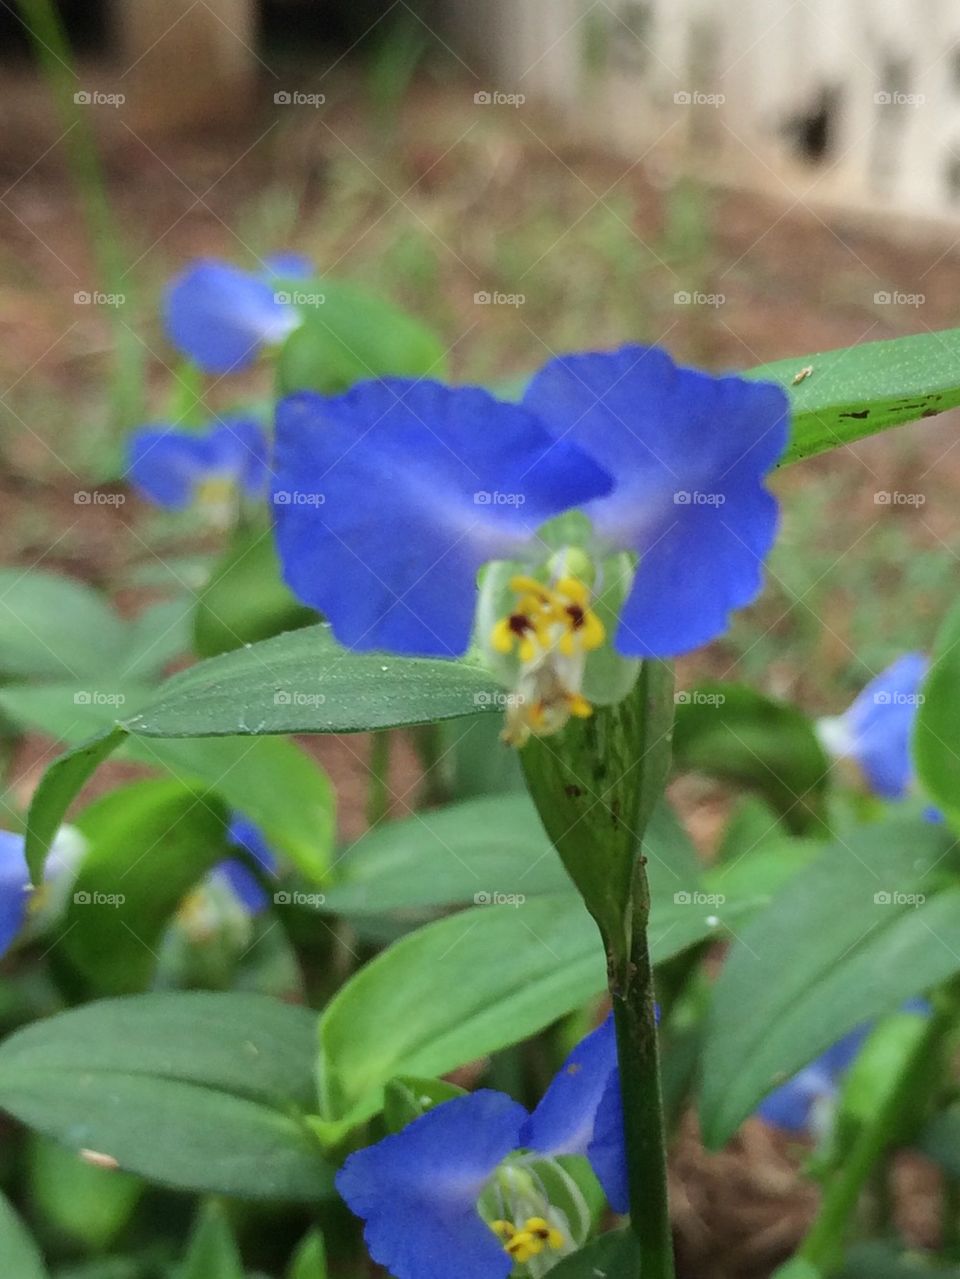 Pretty bluish purple flower